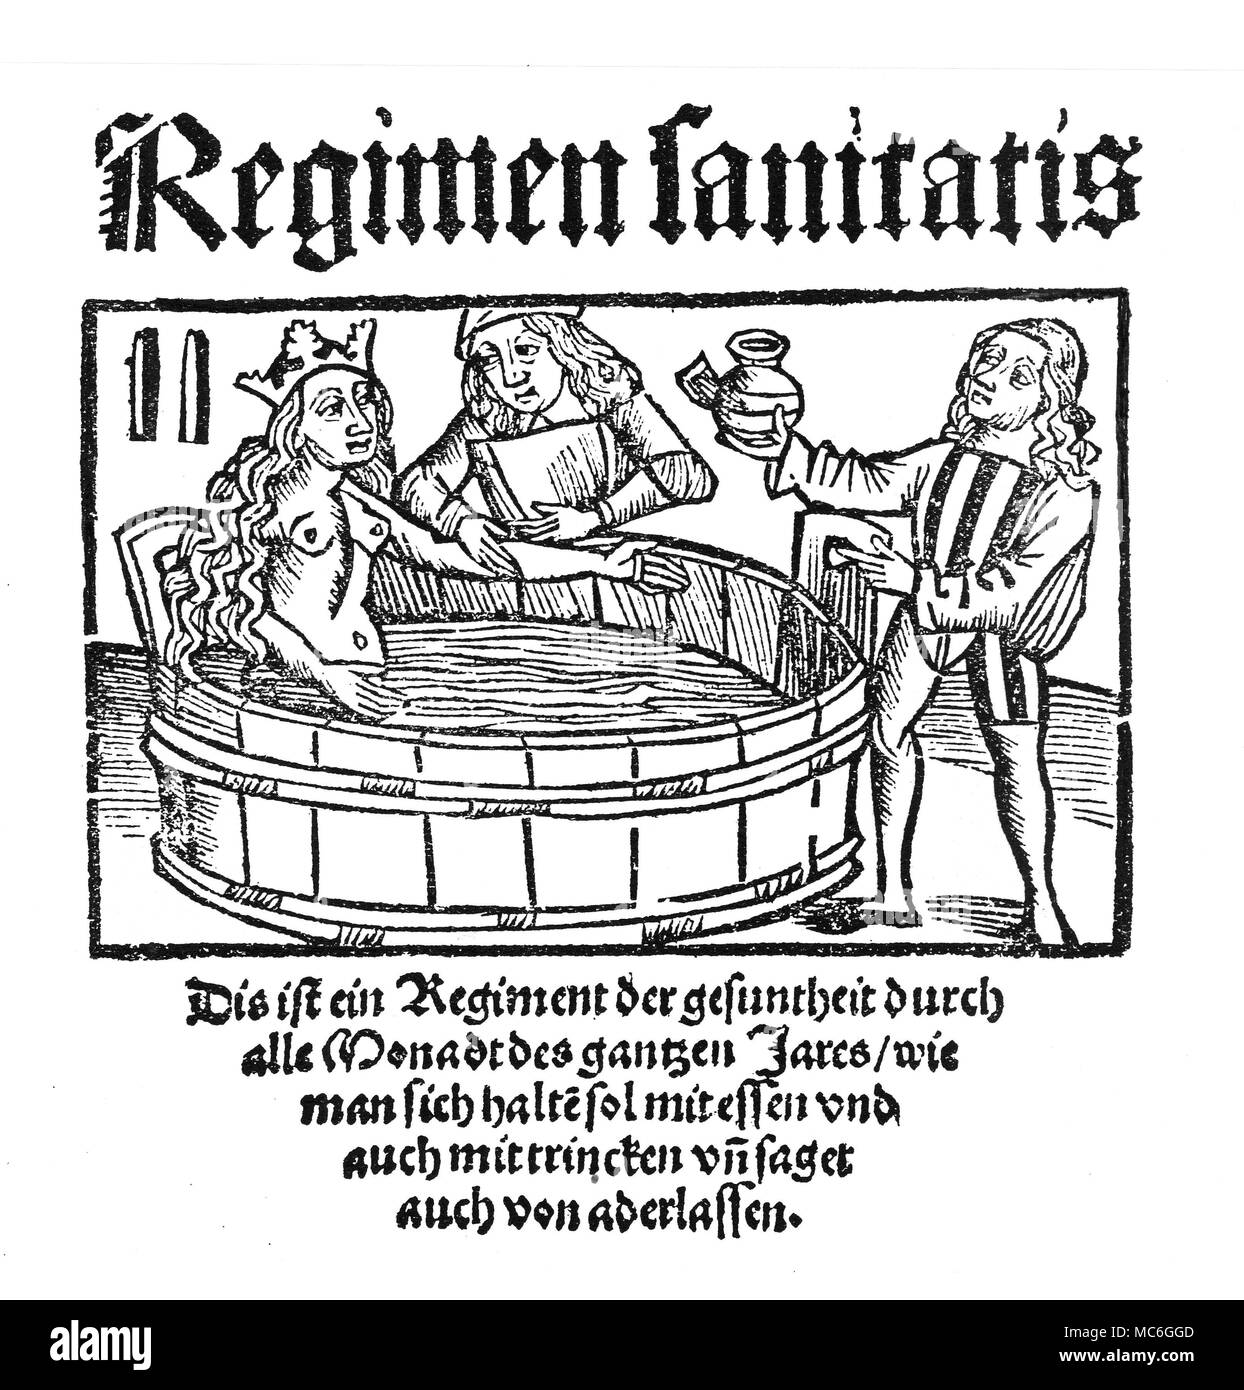 La RADIESTHÉSIE Rhabdomancy radiesthésie, ou avec l'aide de tiges de divination à la recherche de métaux cachés. Gravure sur bois de Georg Agricola, De Re Metallica, 1571. Banque D'Images